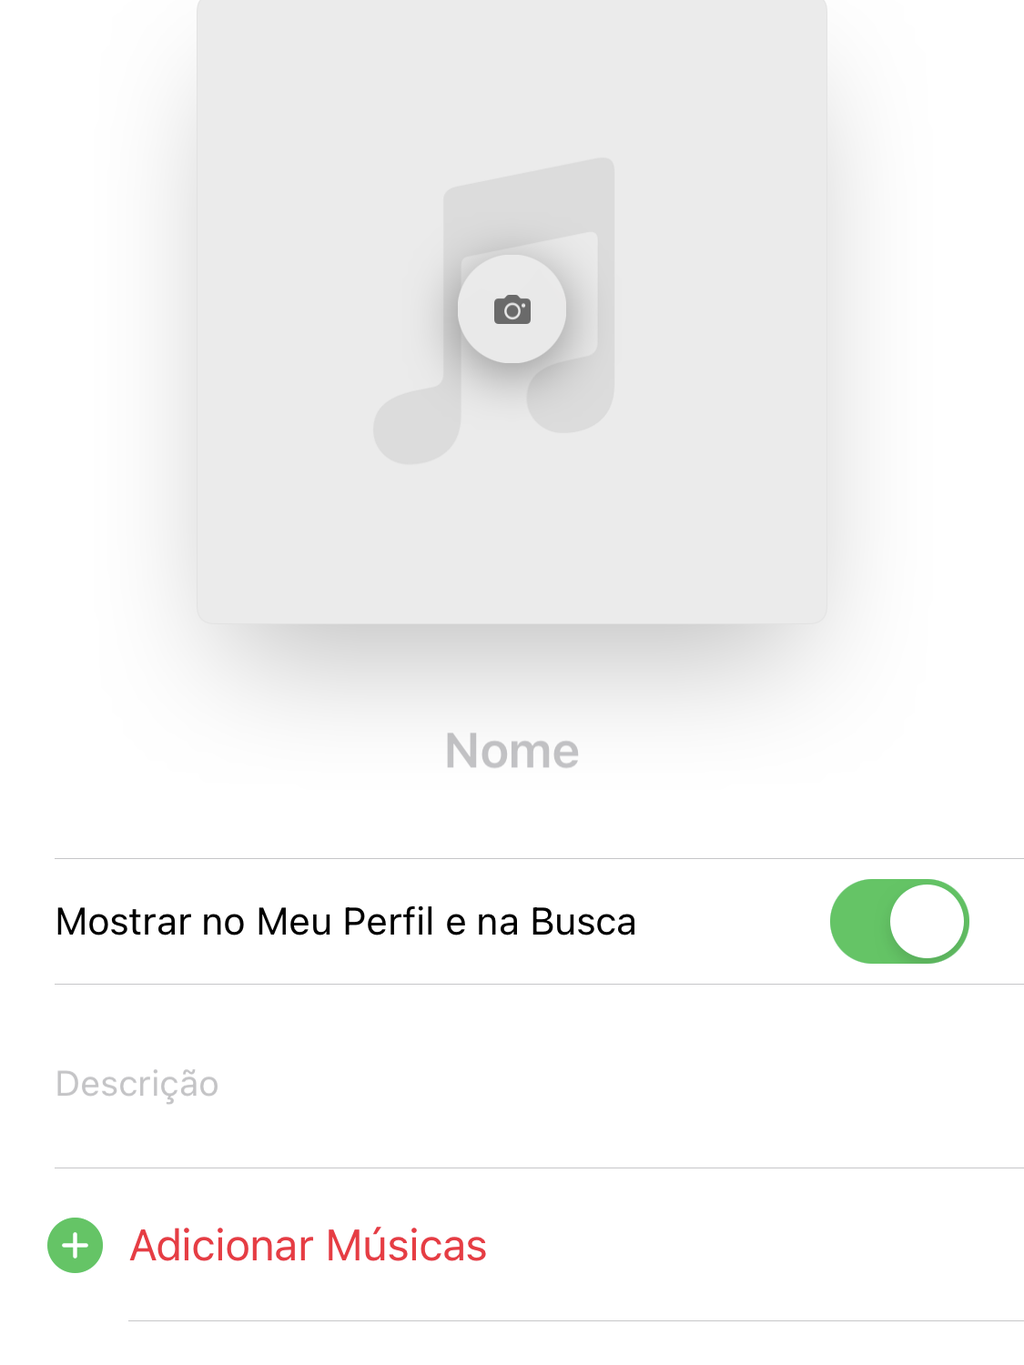 Personalize sua playlist, adicionando músicas e editando seus detalhes - (Captura: Canaltech/Felipe Freitas)